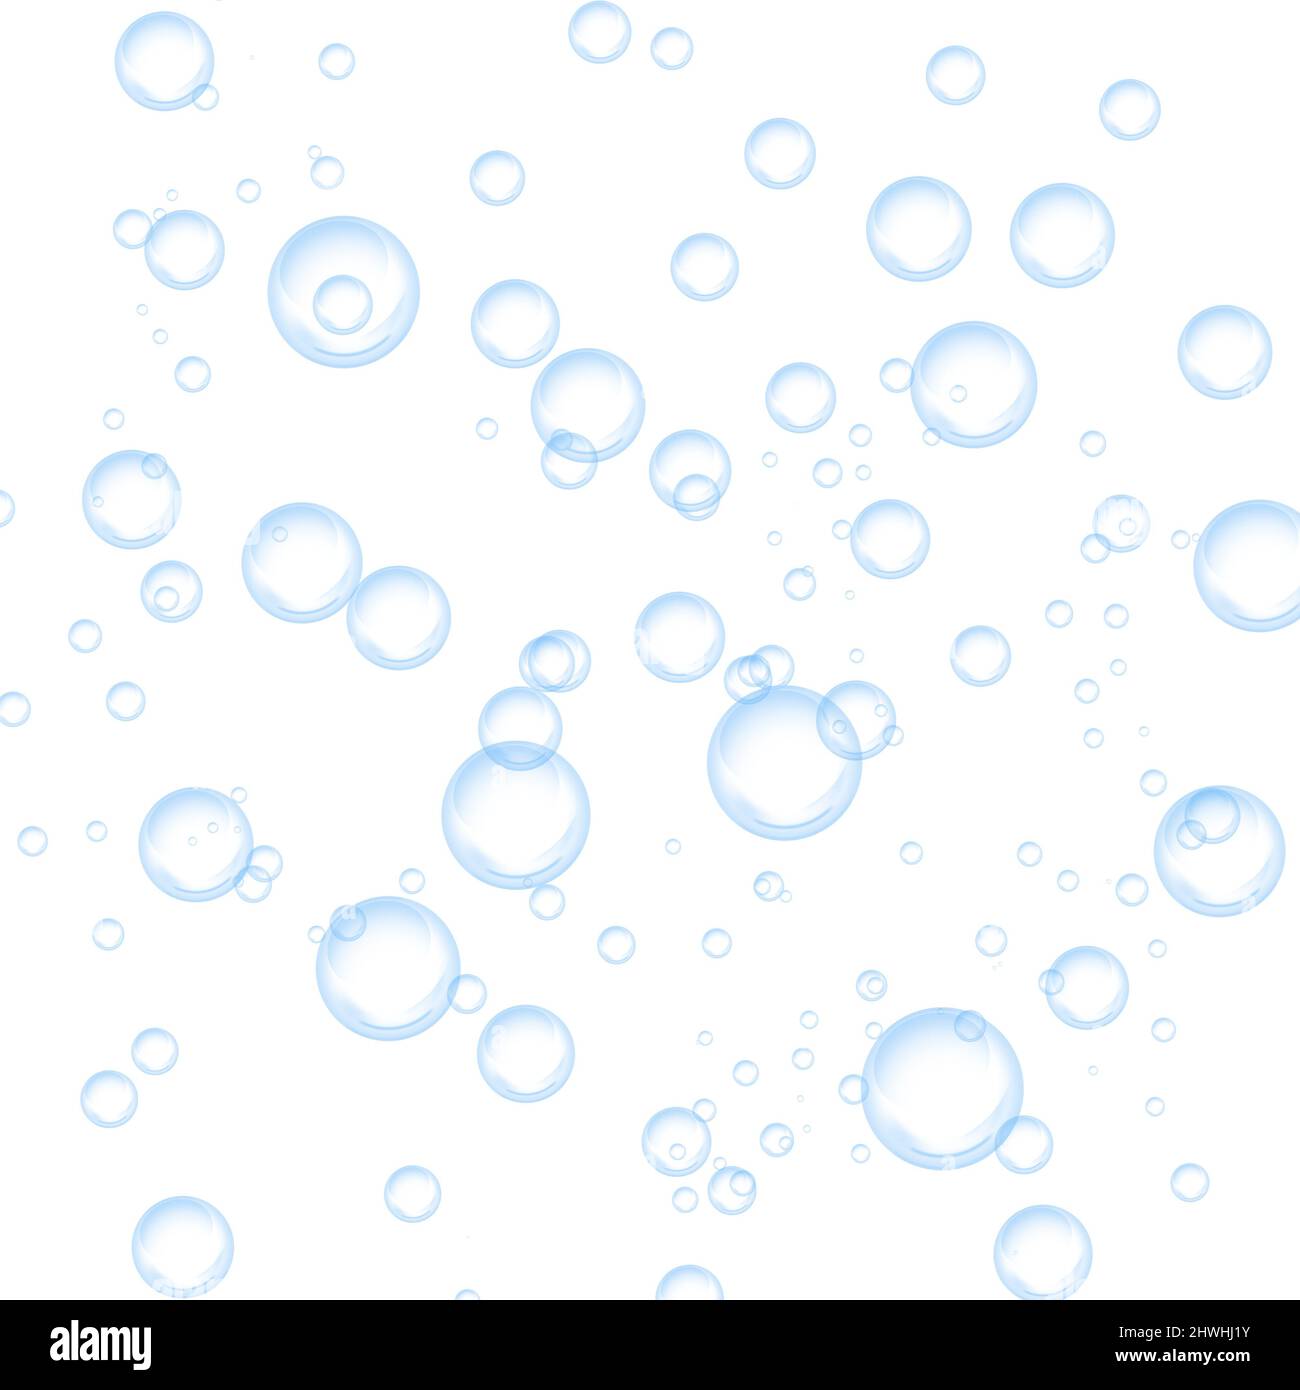 Illustrazione astratta della bolla d'acqua. Bolle d'acqua o di sapone su sfondo bianco. Foto Stock